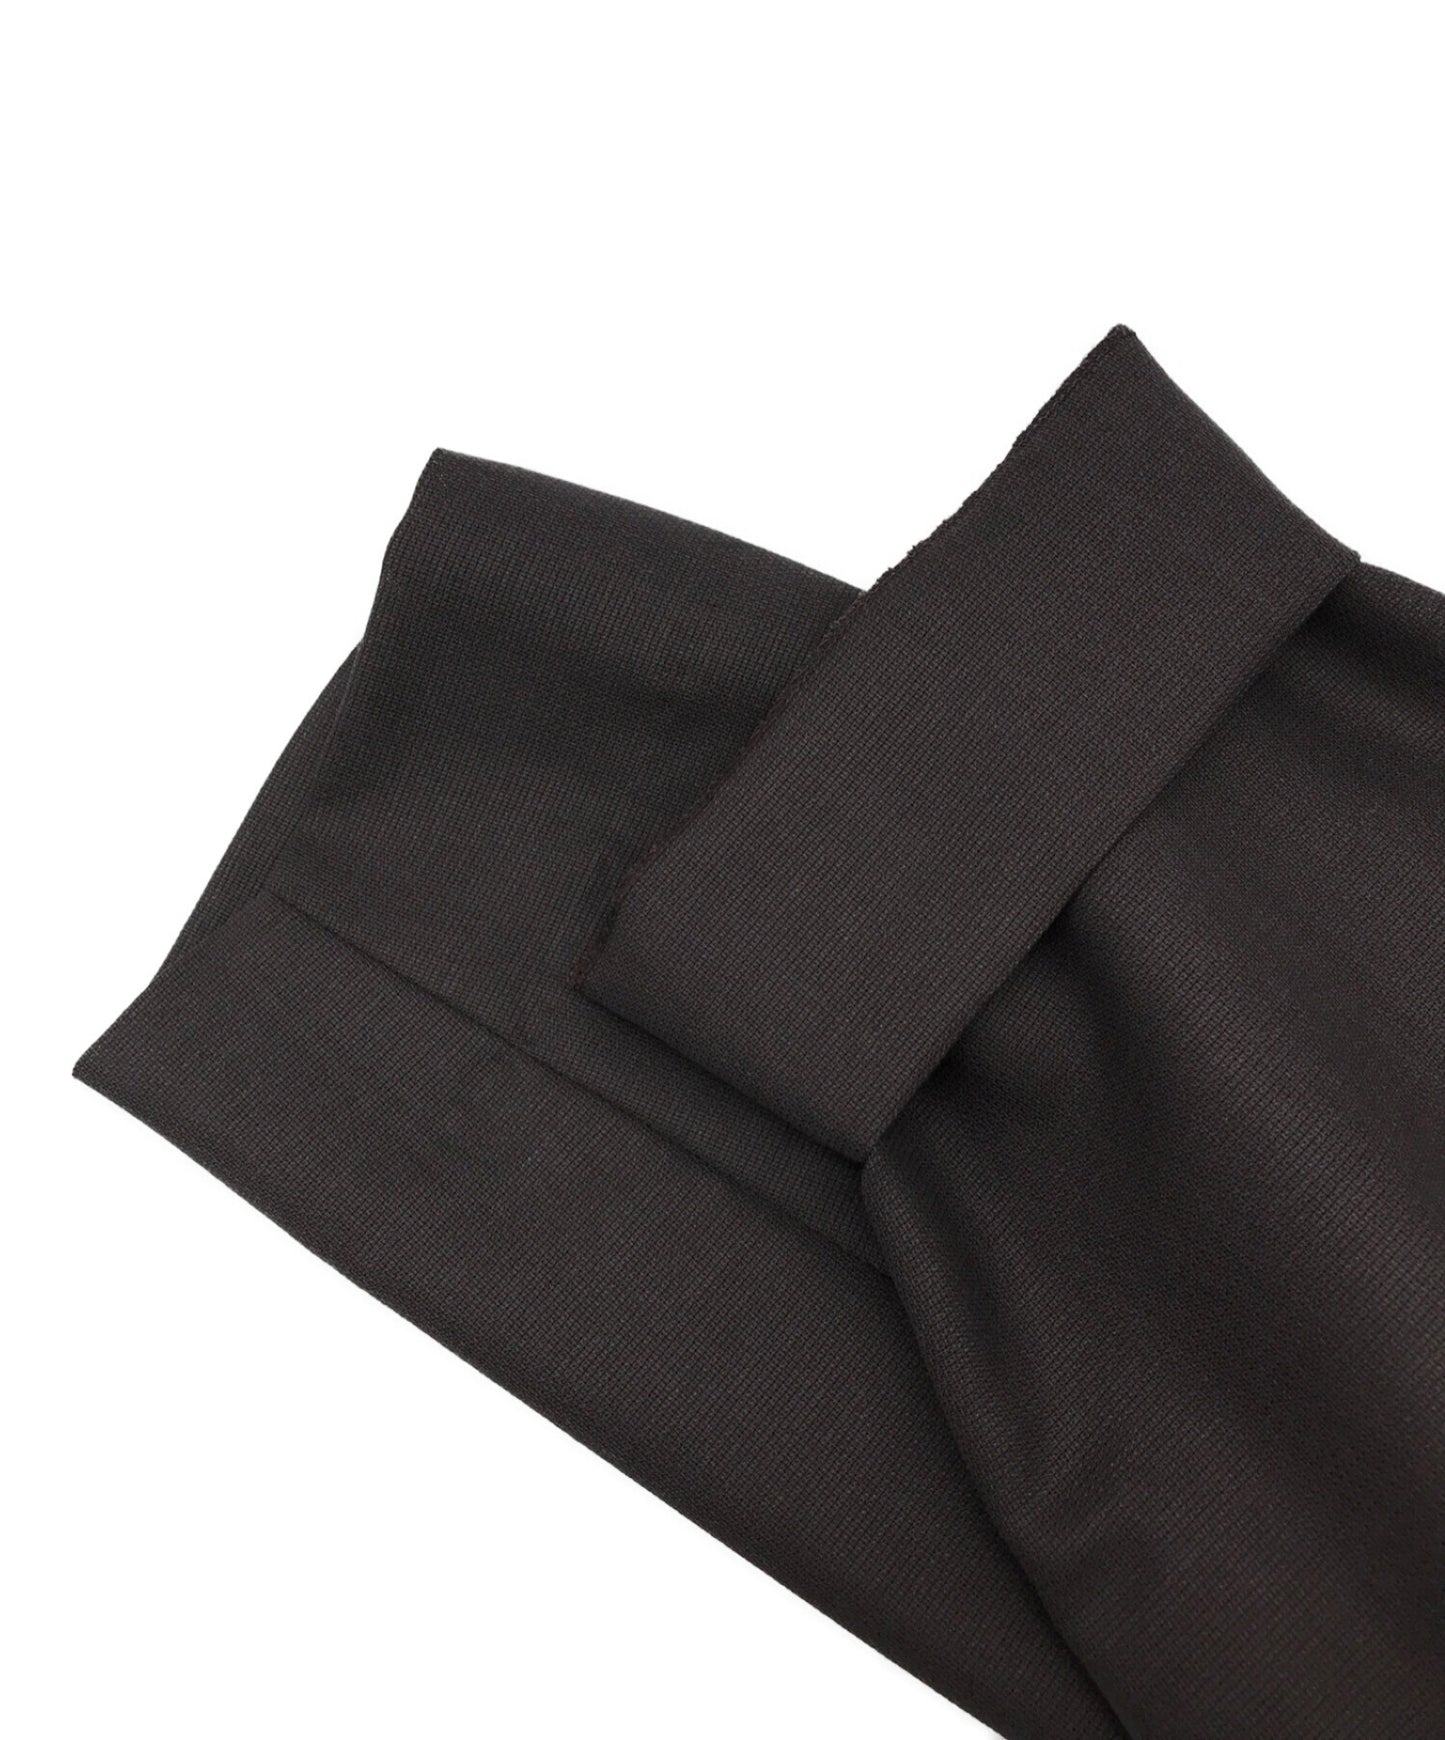 [Pre-owned] COMME des GARCONS HOMME DEUX Wool tuck pants DK-P034